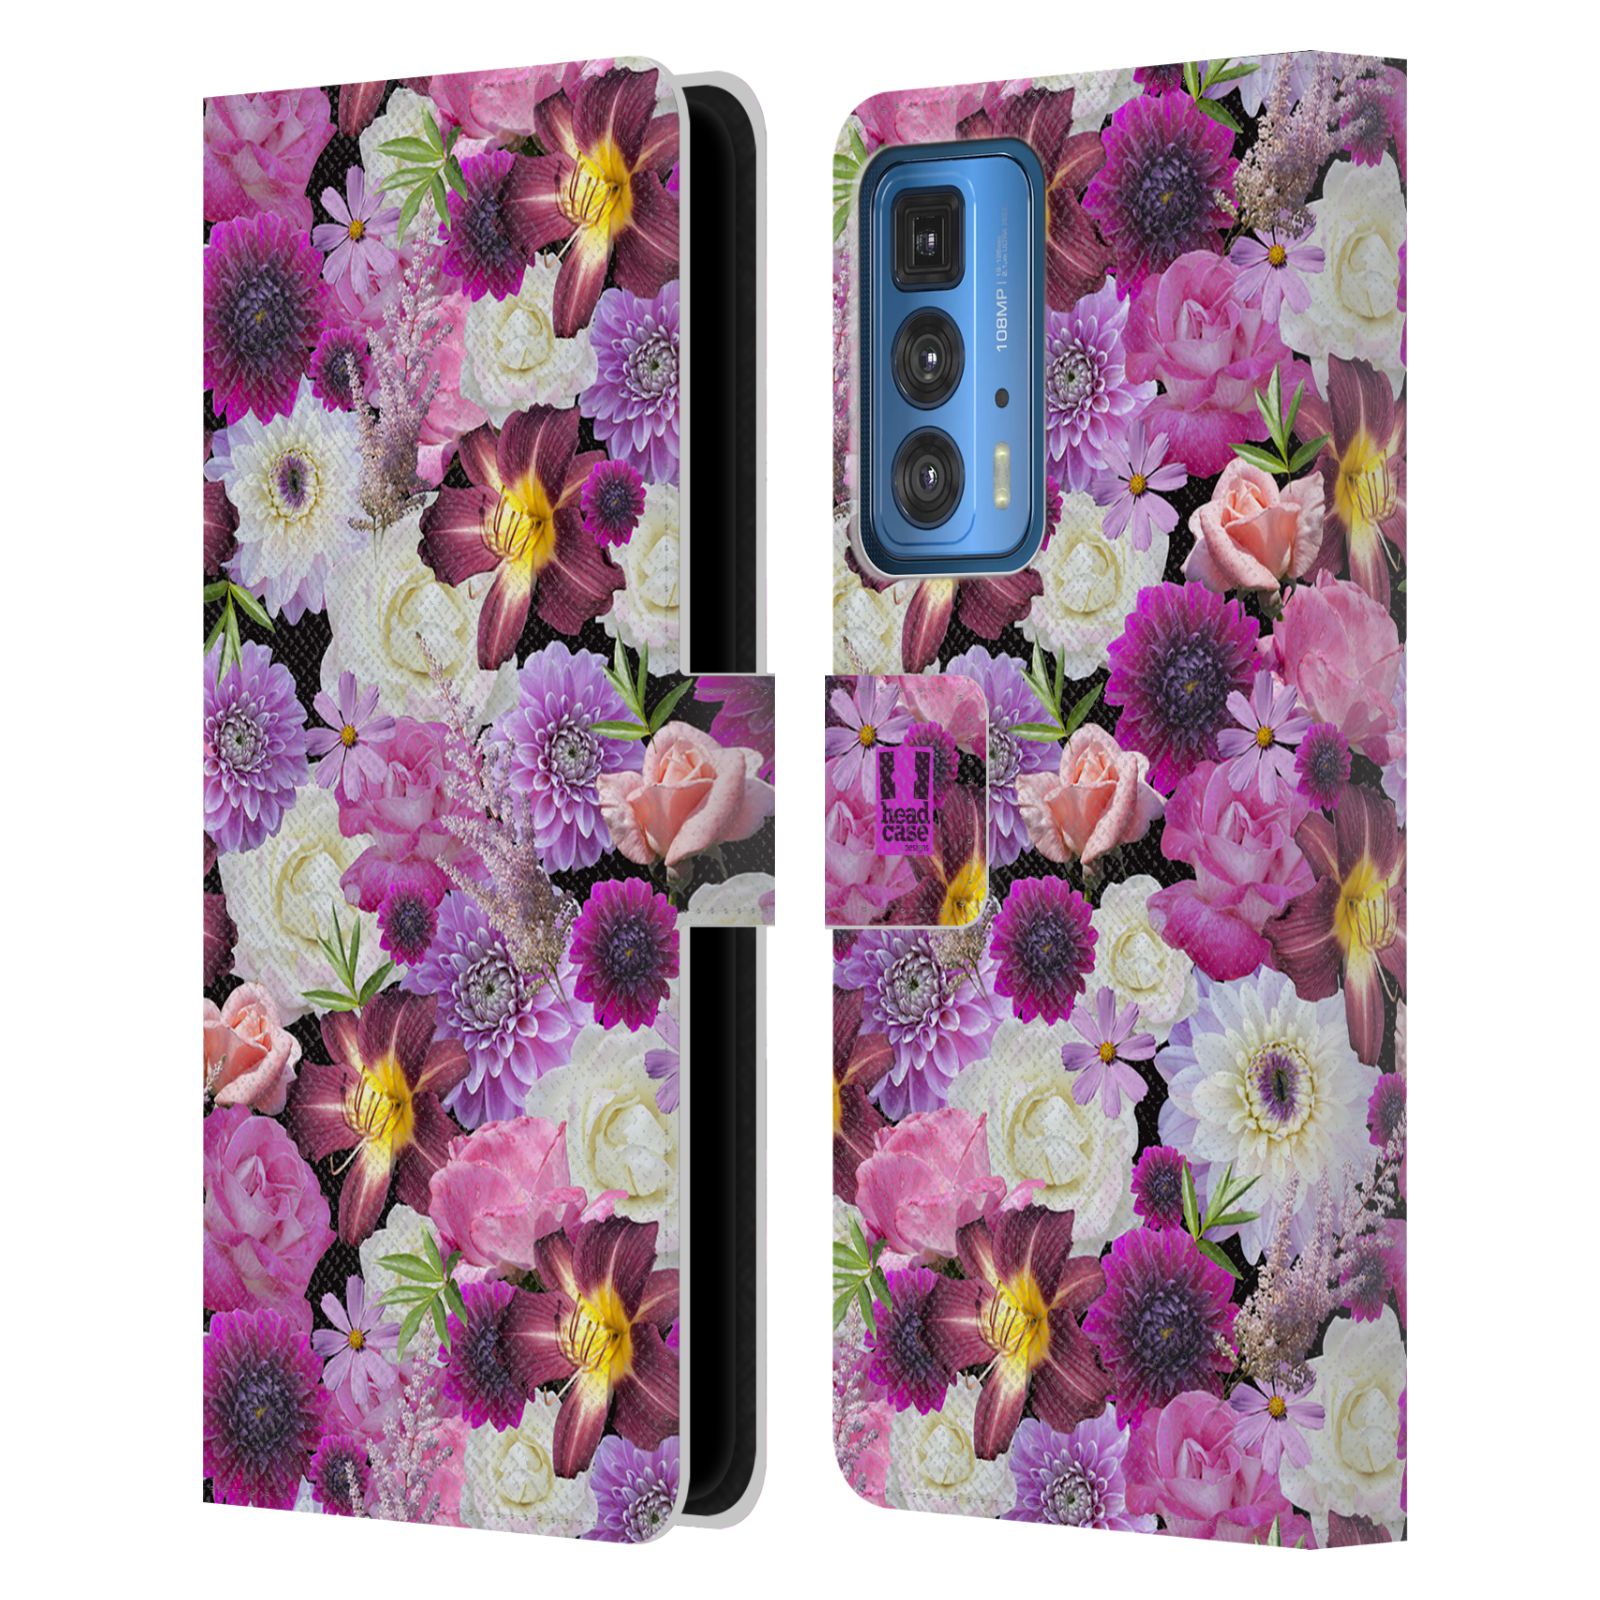 Pouzdro HEAD CASE na mobil Motorola EDGE 20 PRO květy foto fialová a bílá